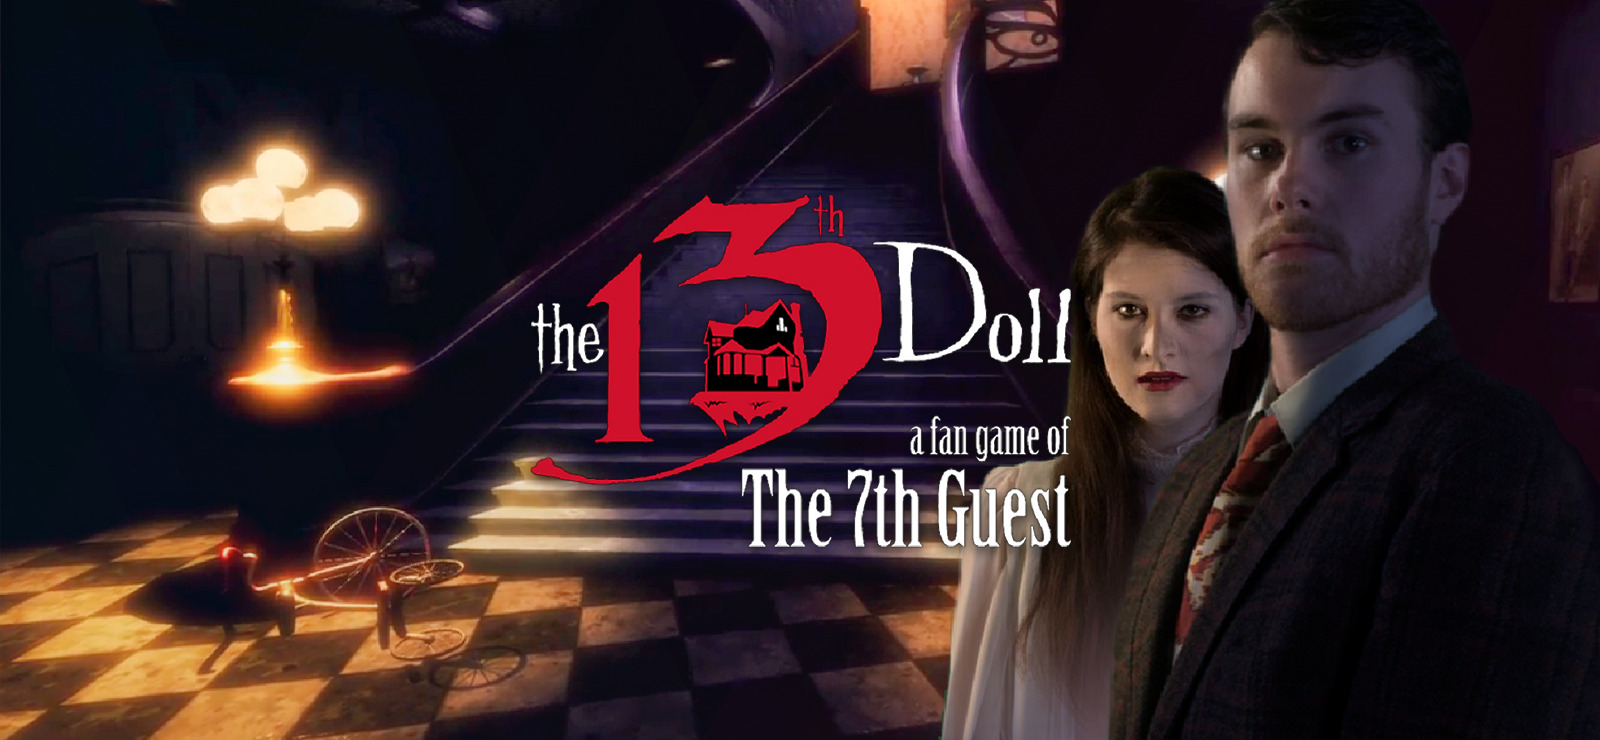 Døde i verden korruption måle The 13th Doll: A Fan Game of The 7th Guest on GOG.com